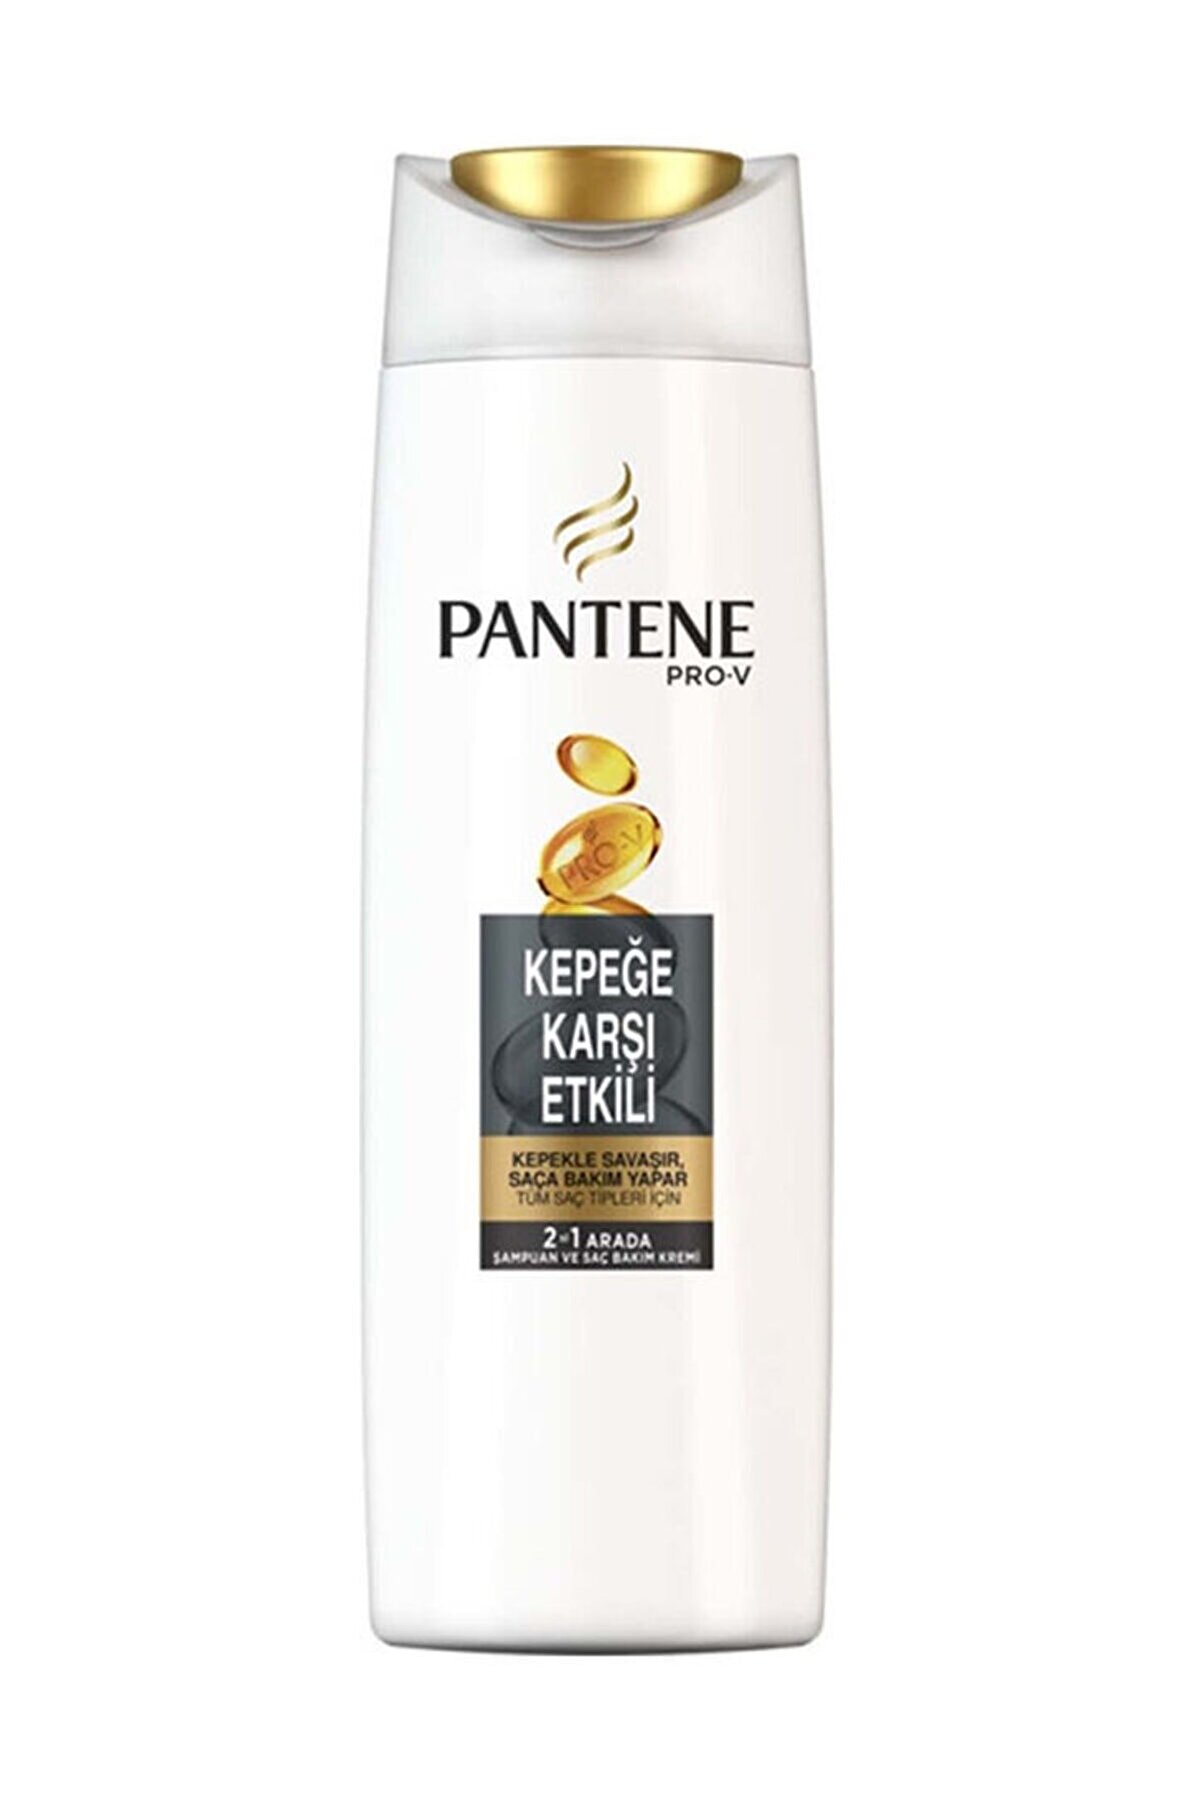 Pantene 2'si 1 Arada Şampuan ve Saç Bakım Kremi Kepeğe Karşı Etkili 400 ml